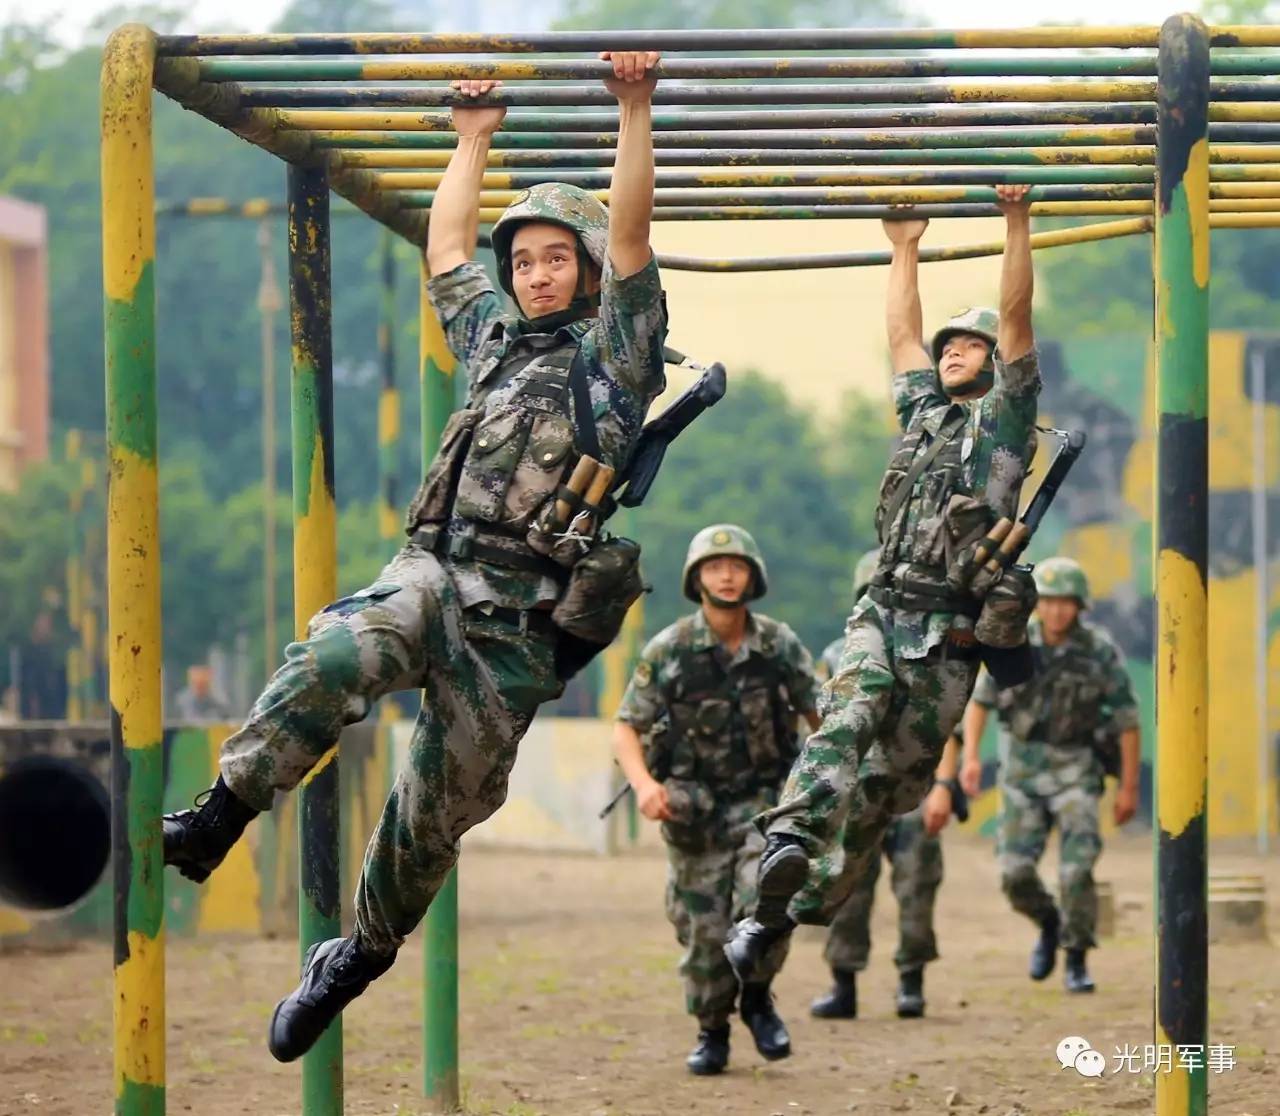 陆军第77集团军某旅与战斗力标准对表,从难从严组组织战斗体能训练